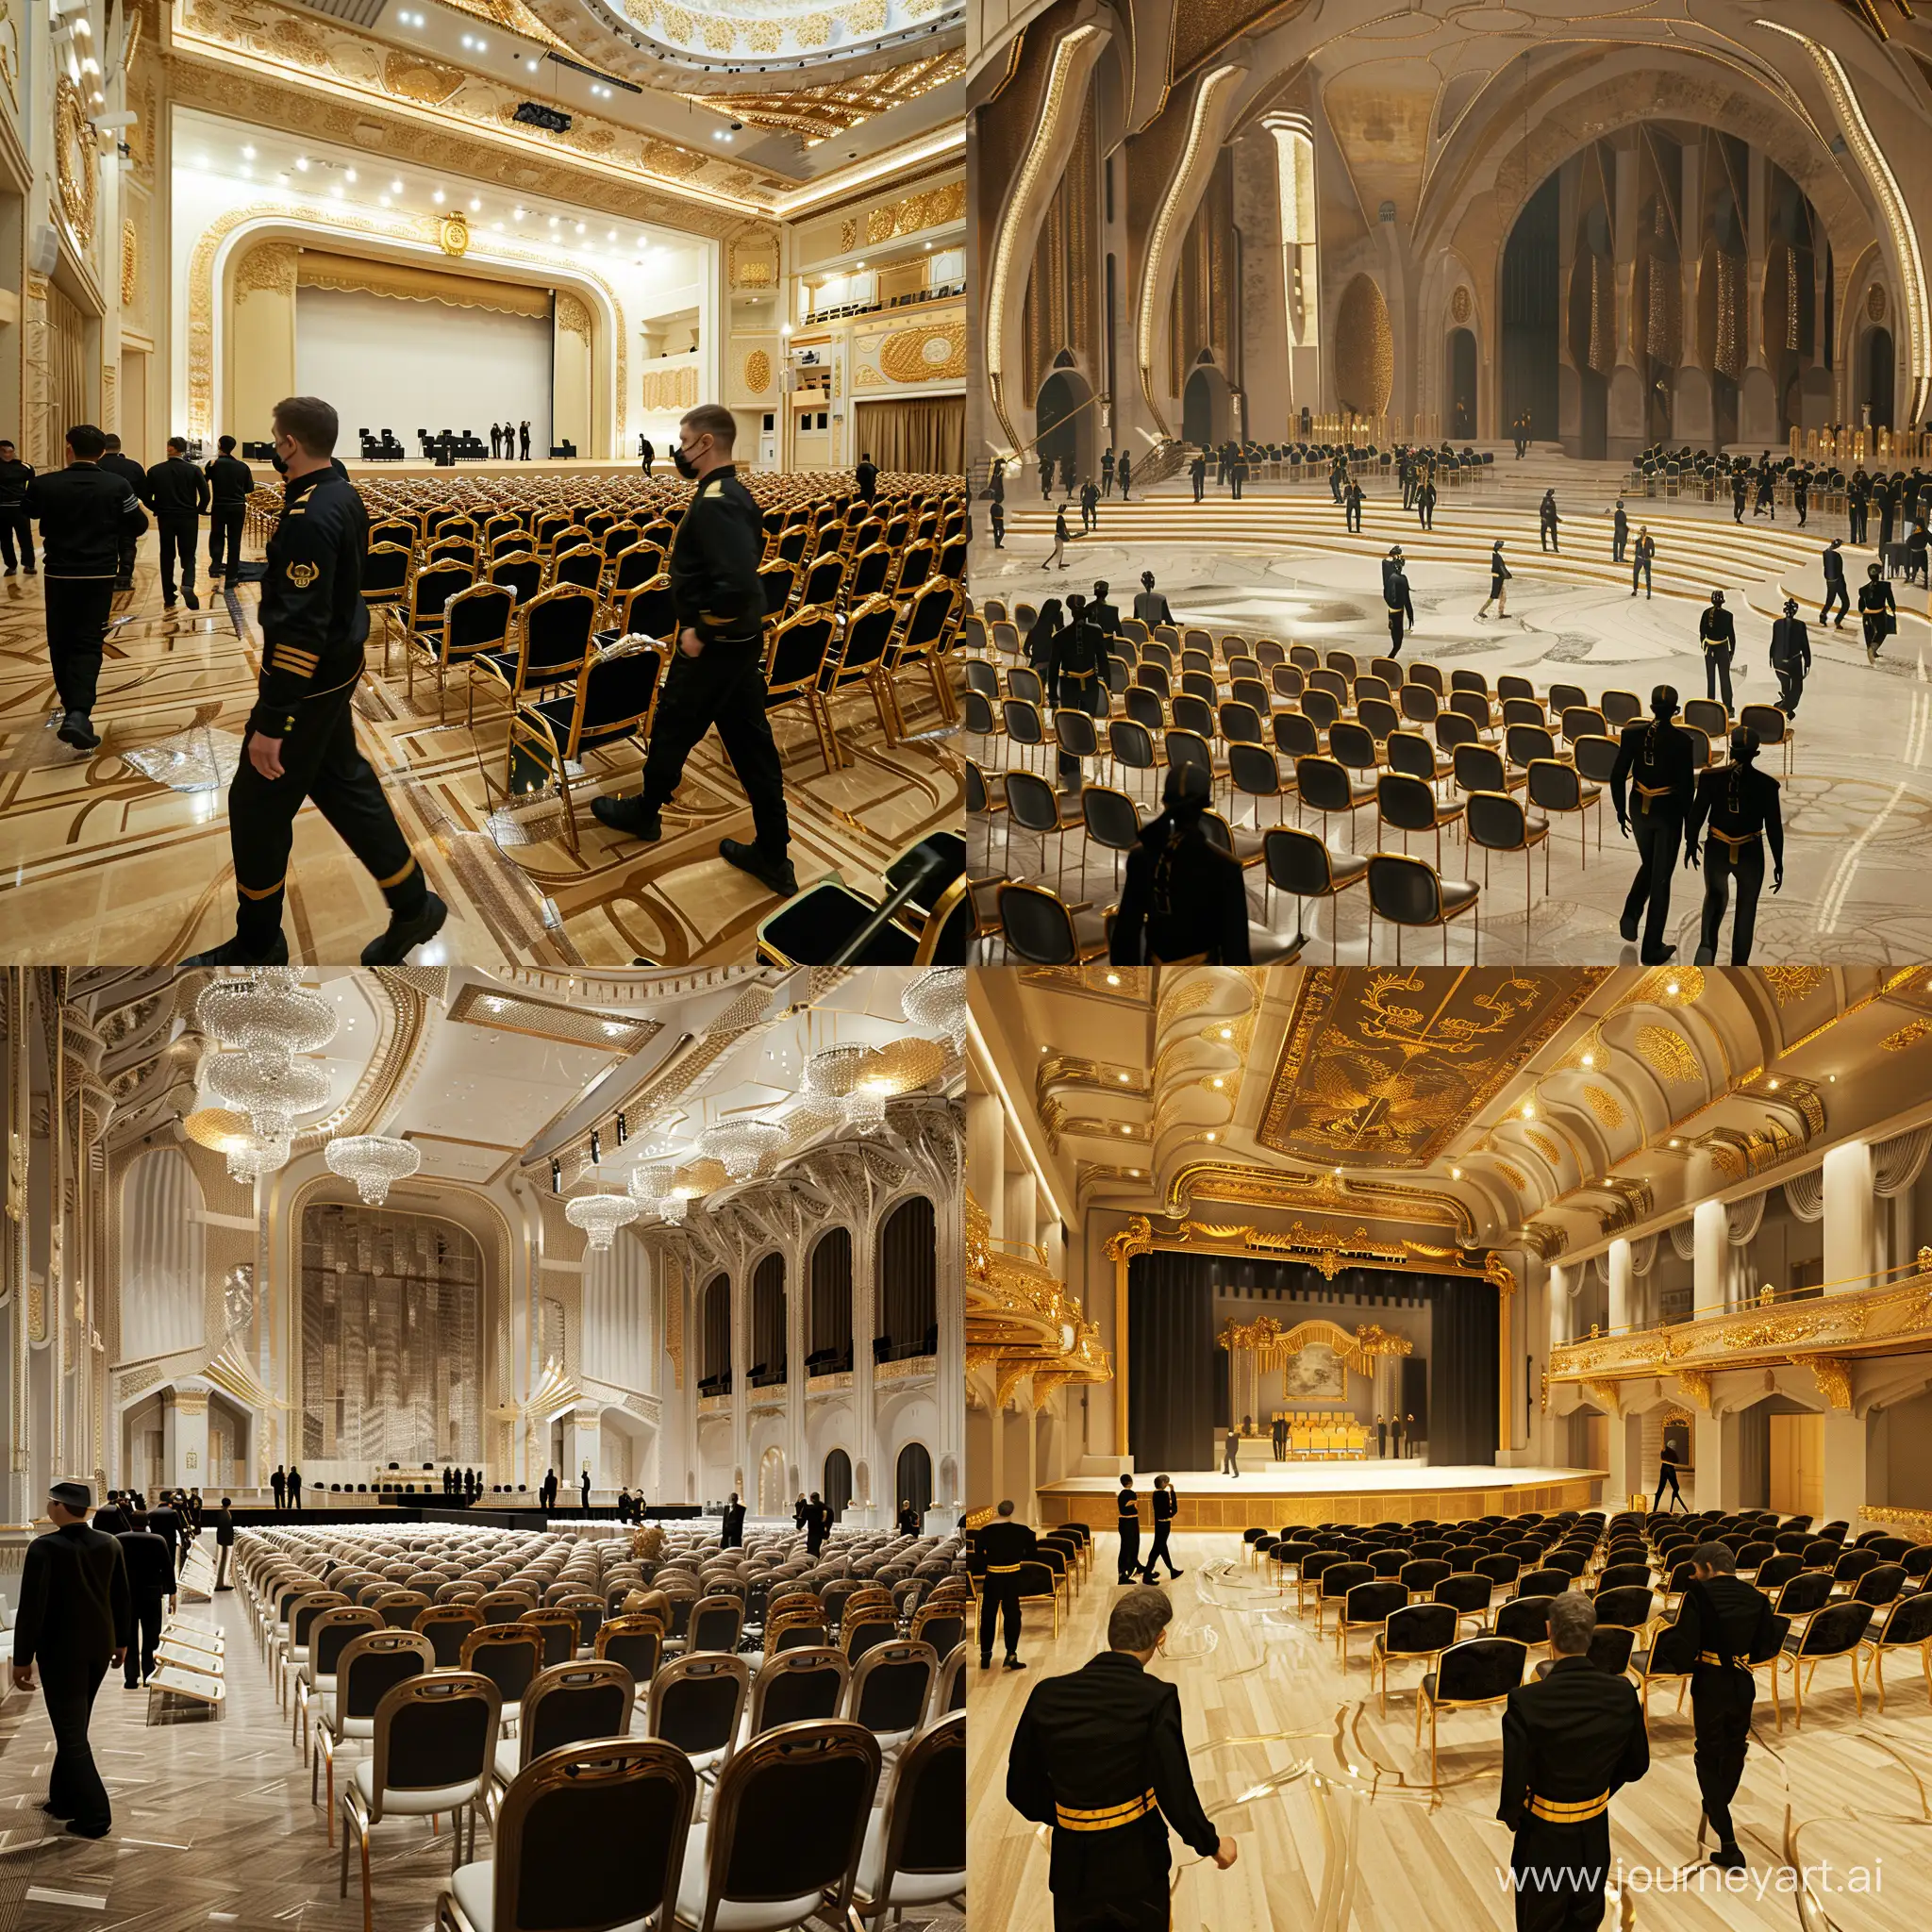 Красивый, стильный зал для выступлений с большим количеством стульев и большой сценой, идет подготовка к мероприятию, по площадке ходят люди в черной одежде с золотыми вставками, арт, реалистичный 